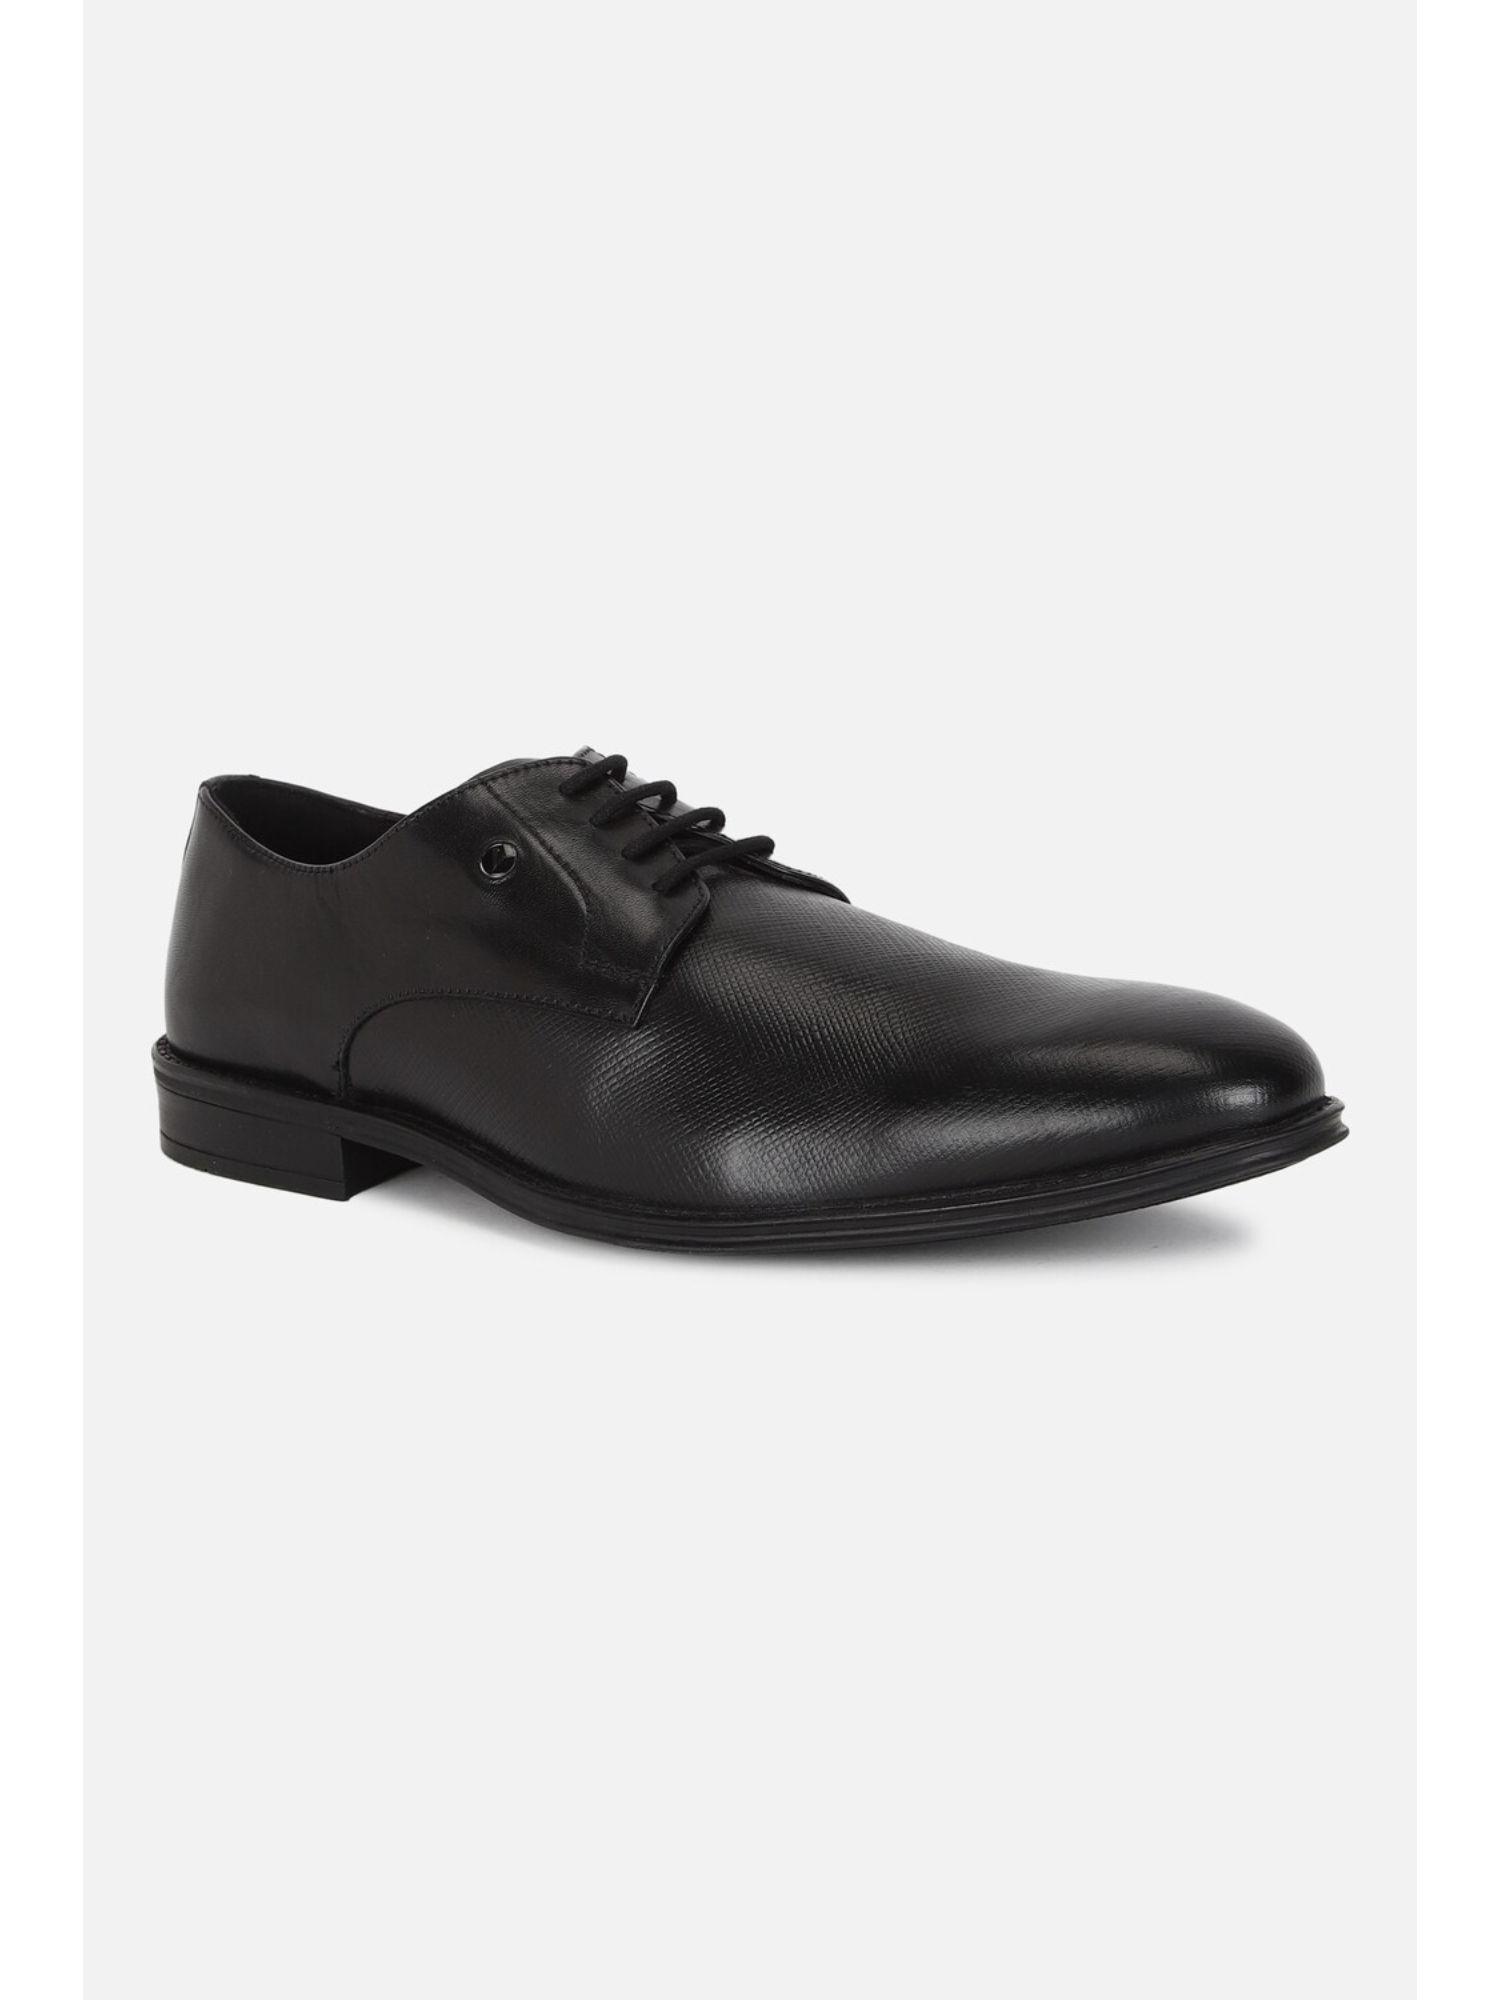 men black lace up oxford shoes